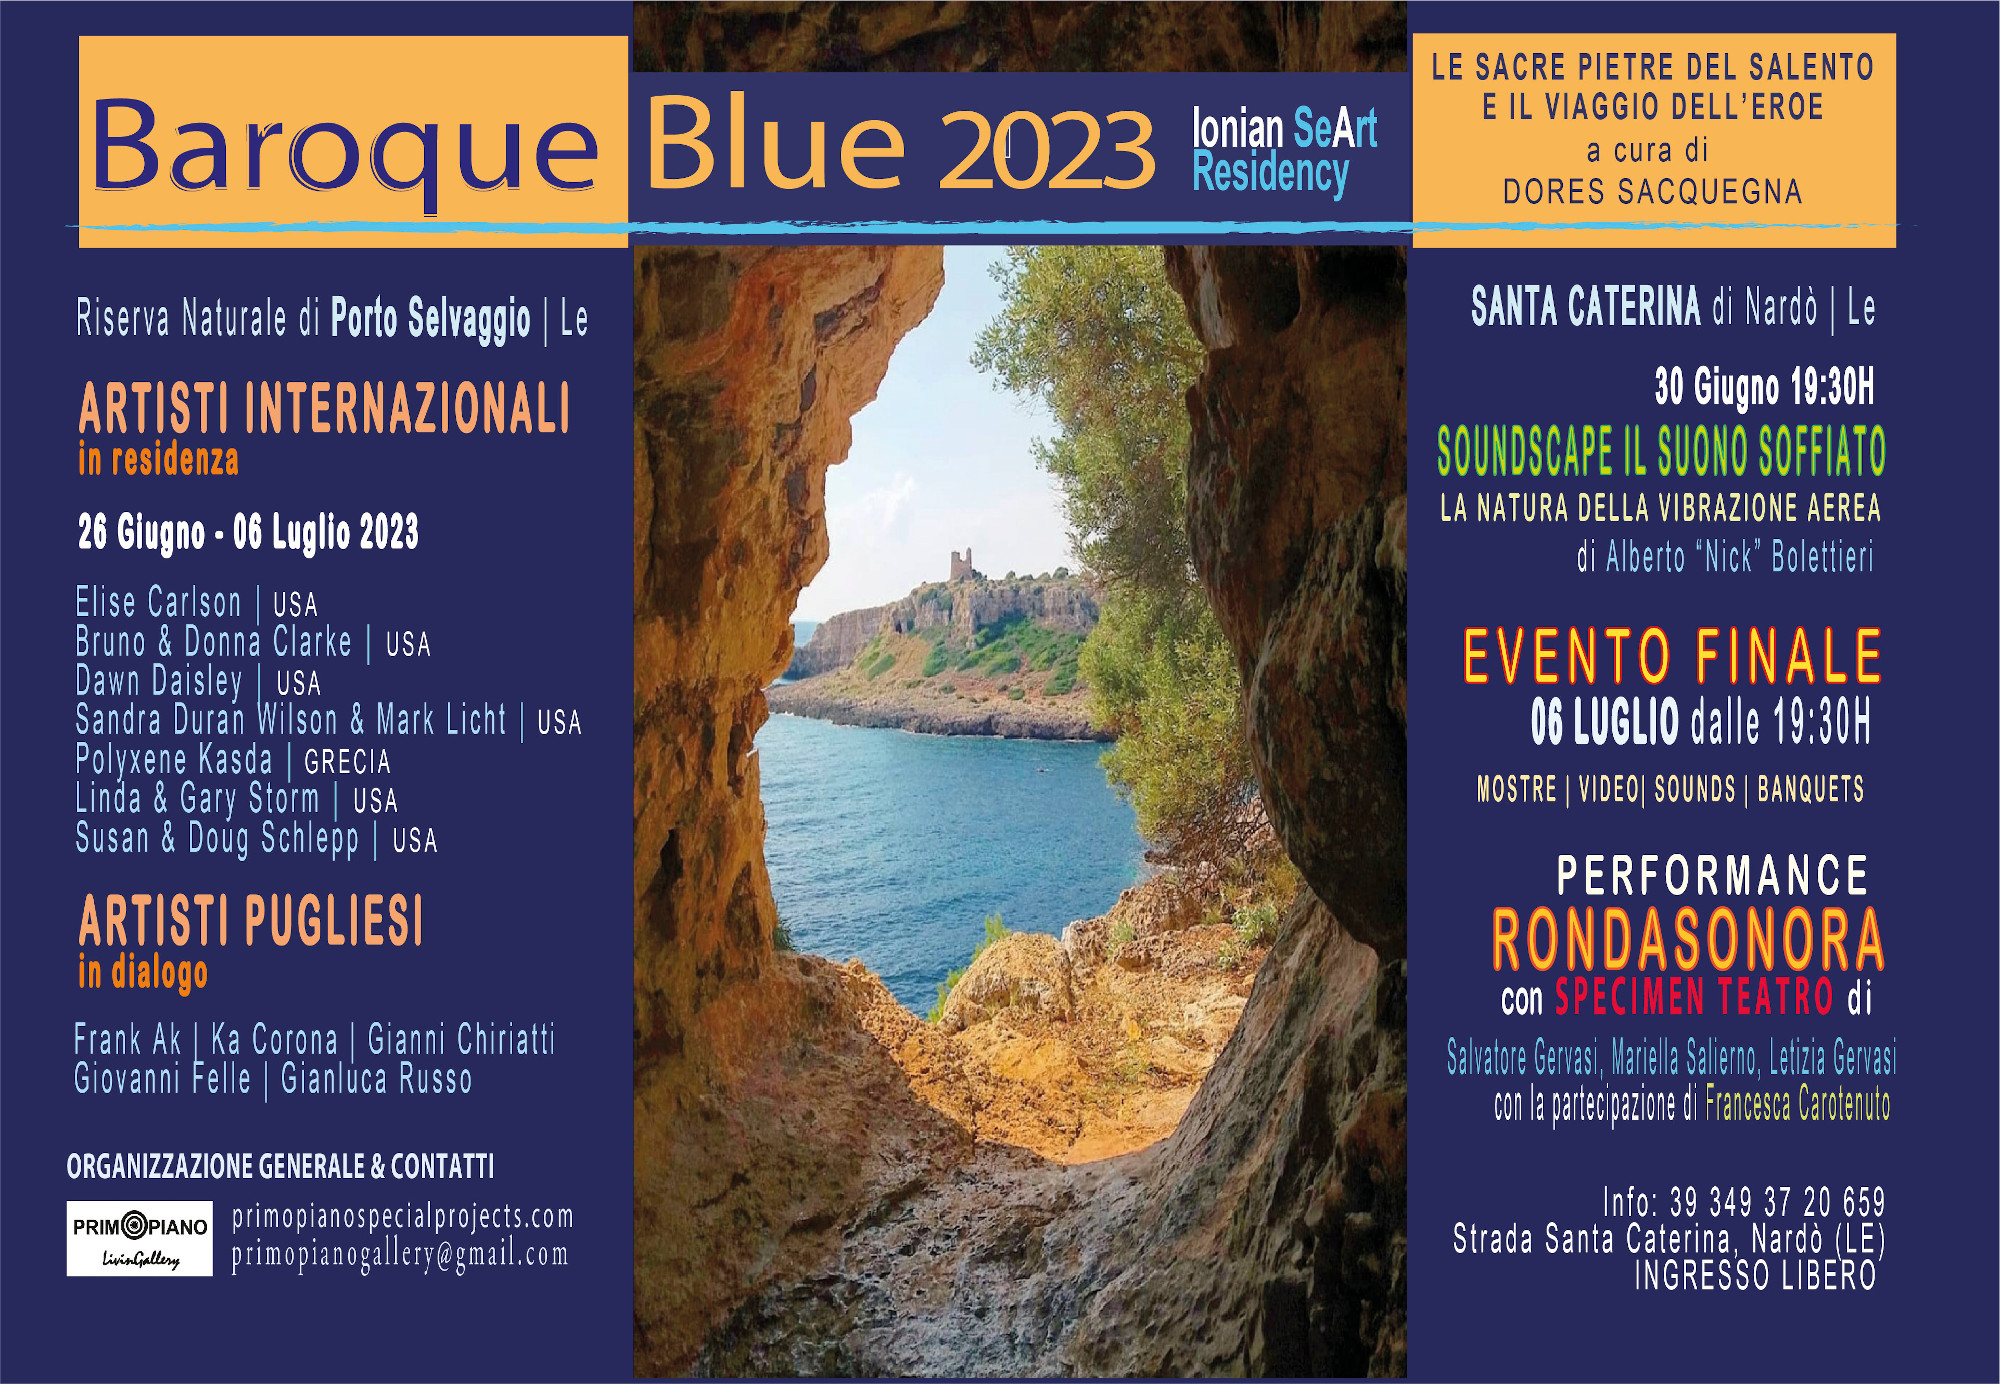 Baroque Blue Ionian Se-Art Residency 2023